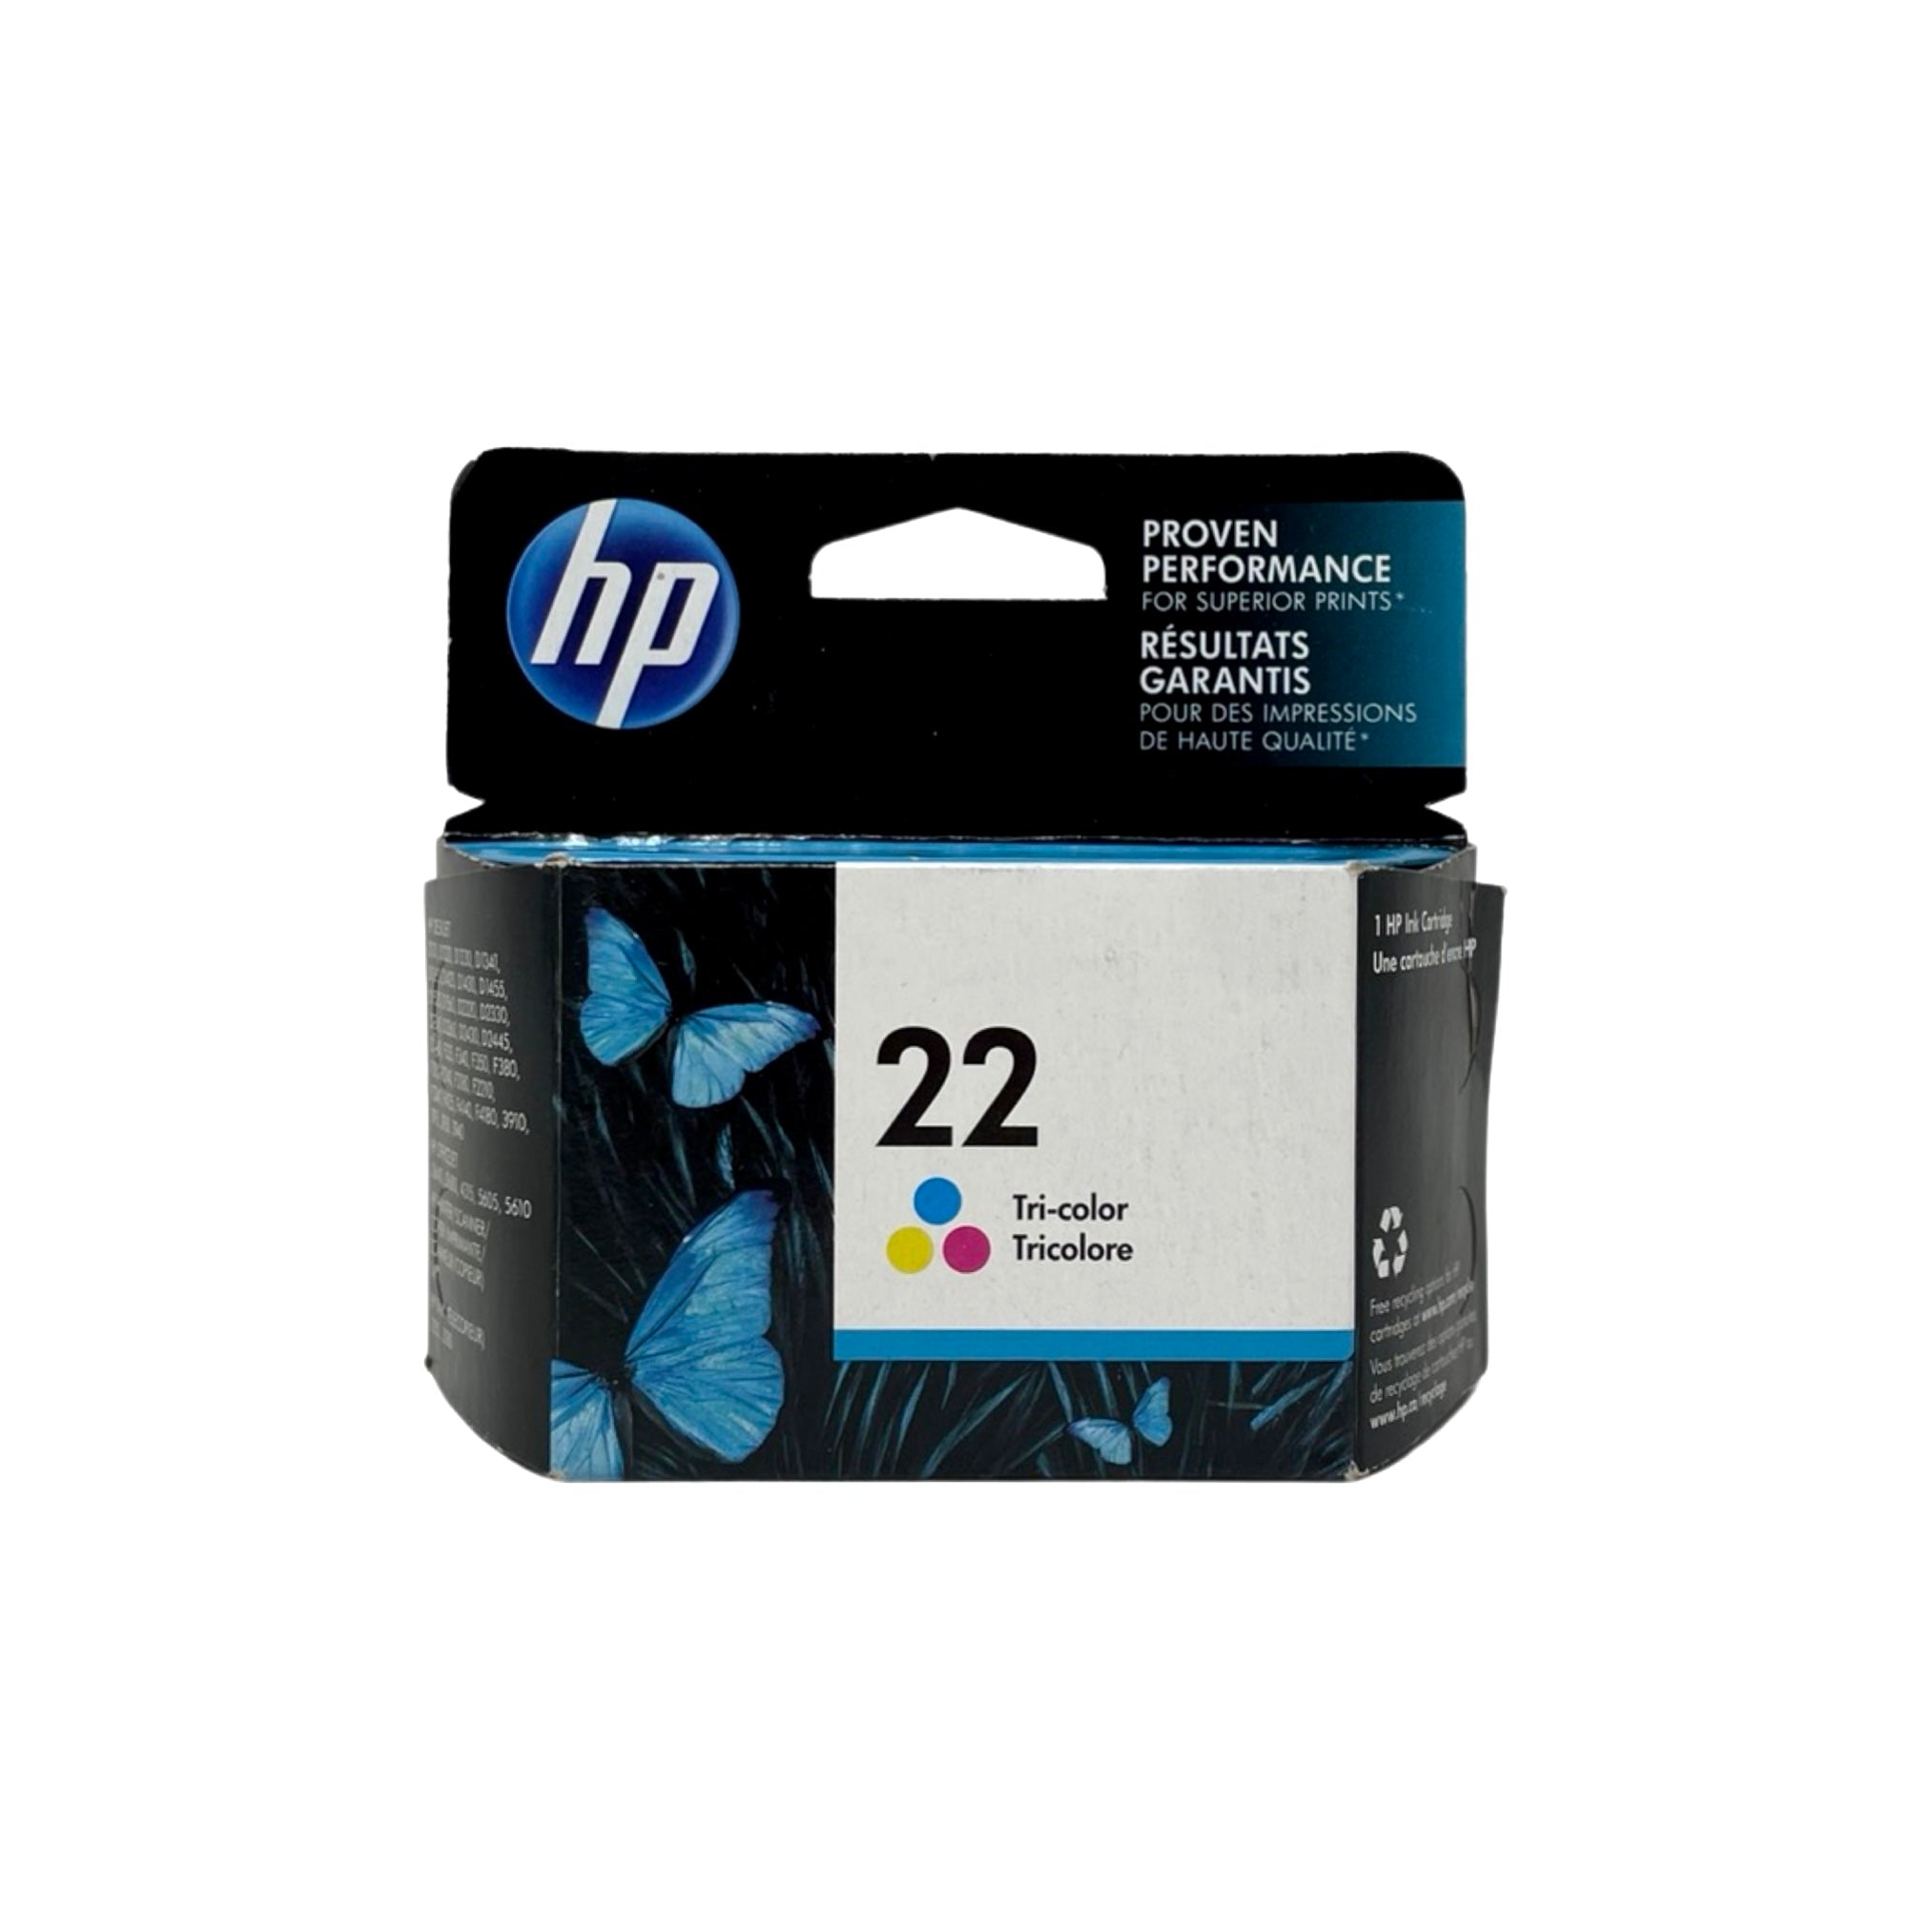 Genuine HP 22 Color Ink Cartridge, Standard Yield (C9352AN